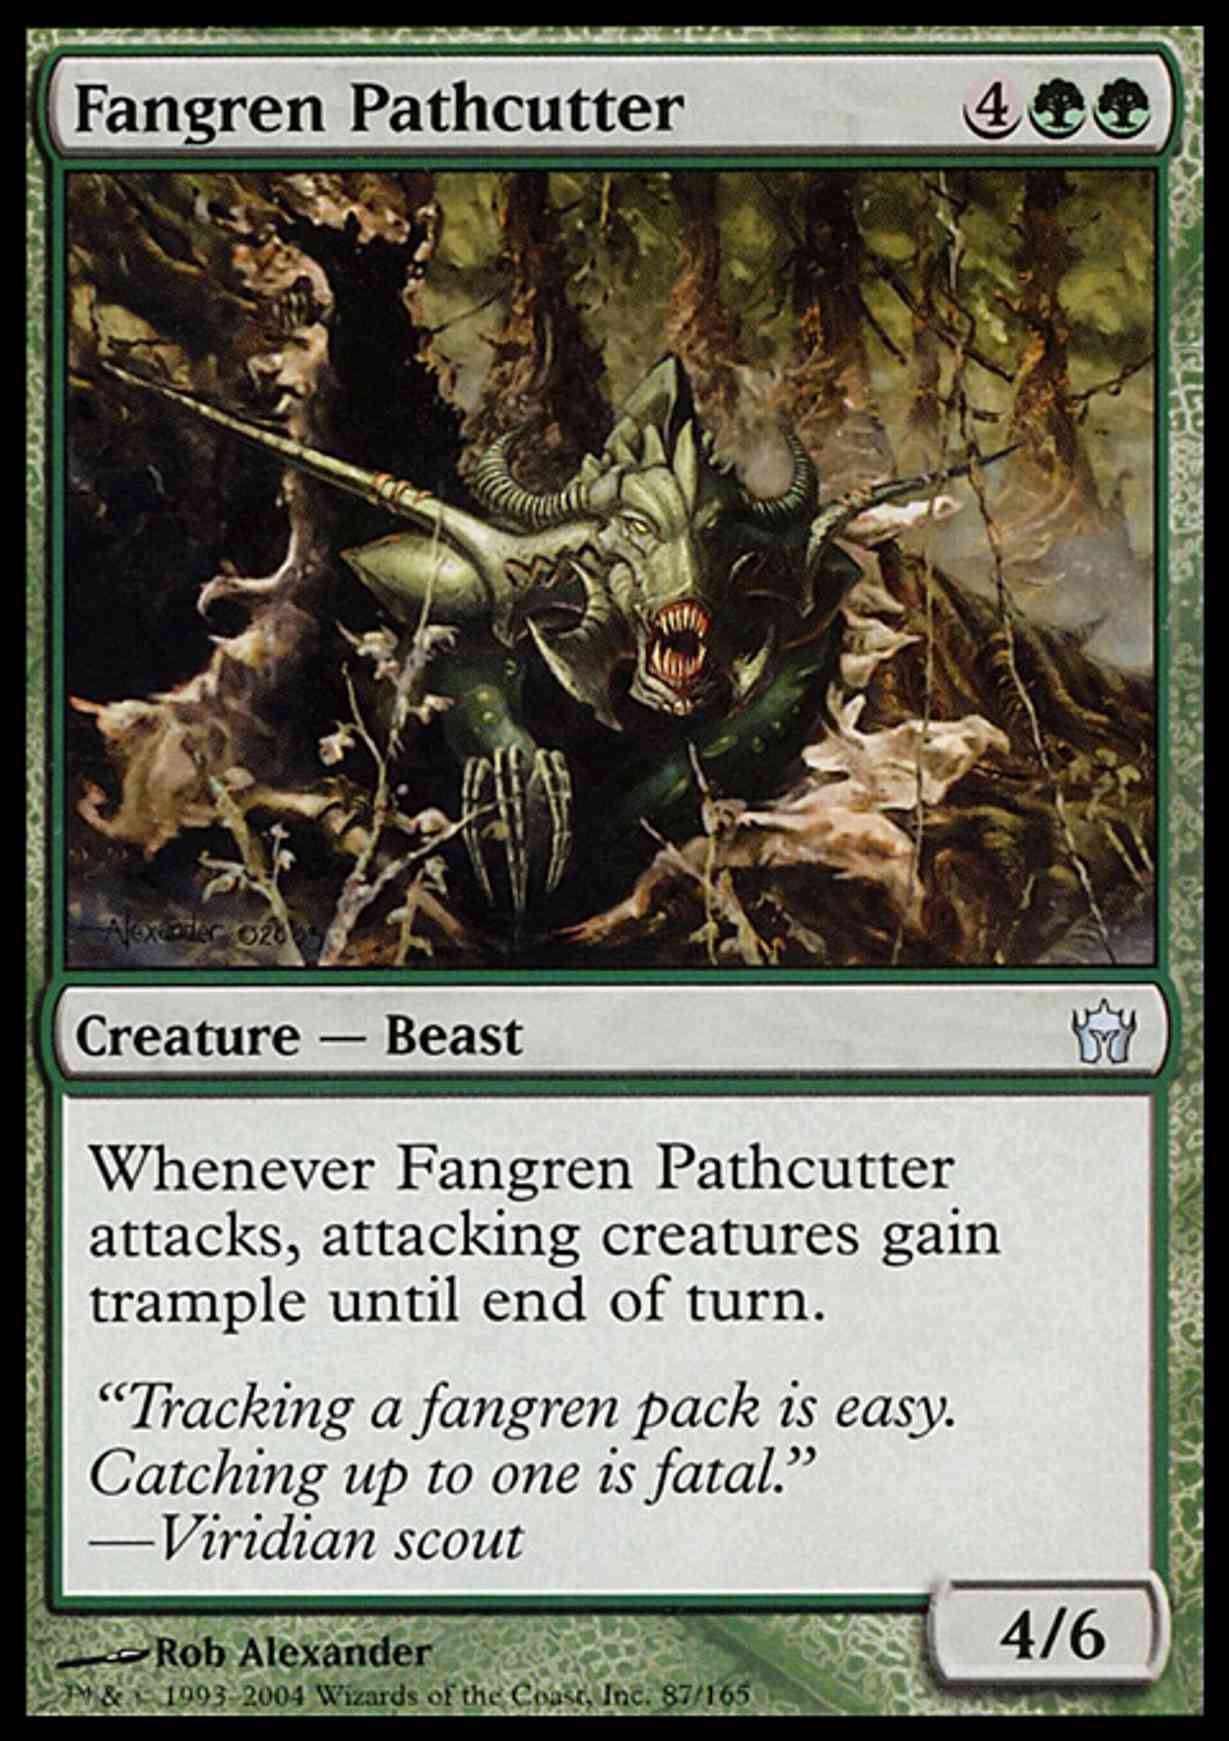 Fangren Pathcutter magic card front